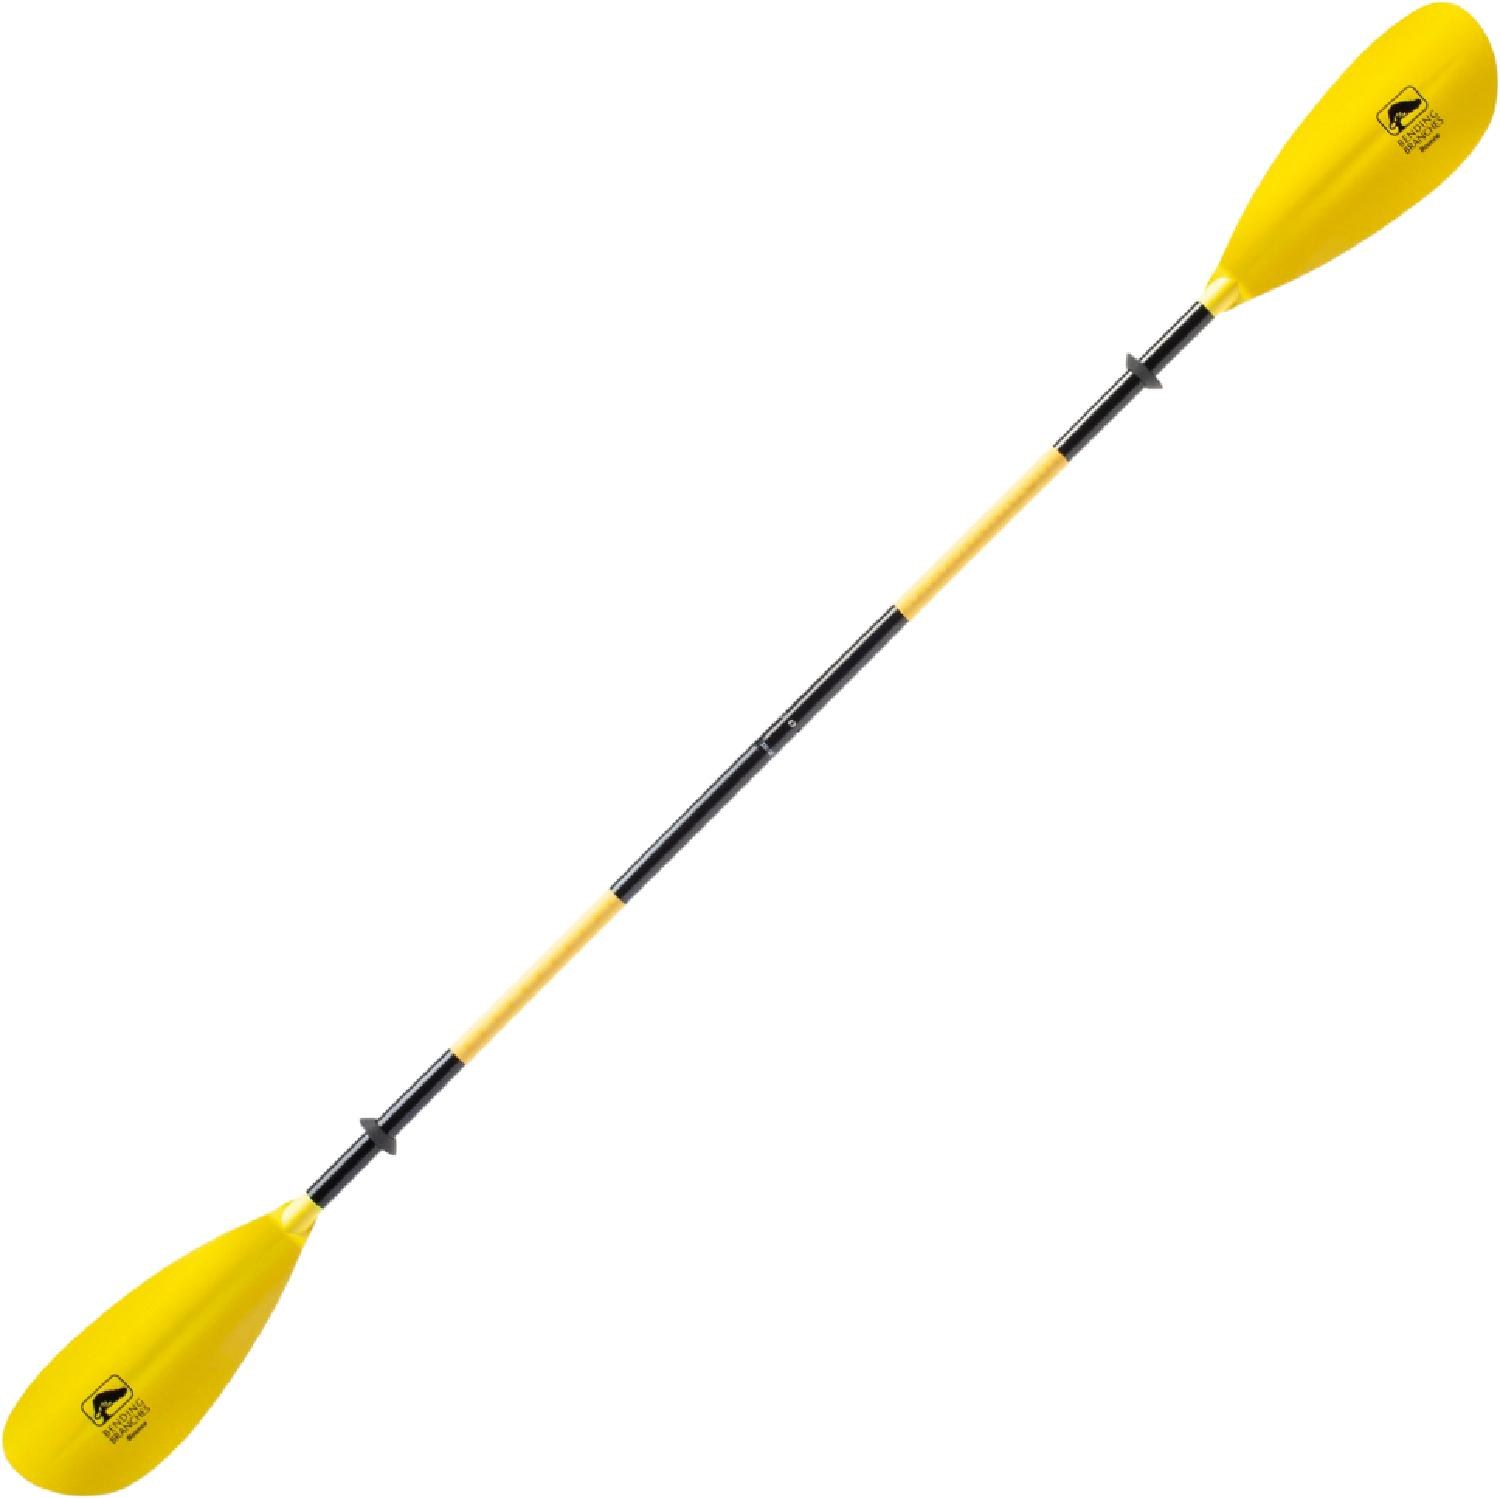 Весло для каяка Bounce X-Grip Bending Branches, желтый весло универсальное двойное для сапа каяка